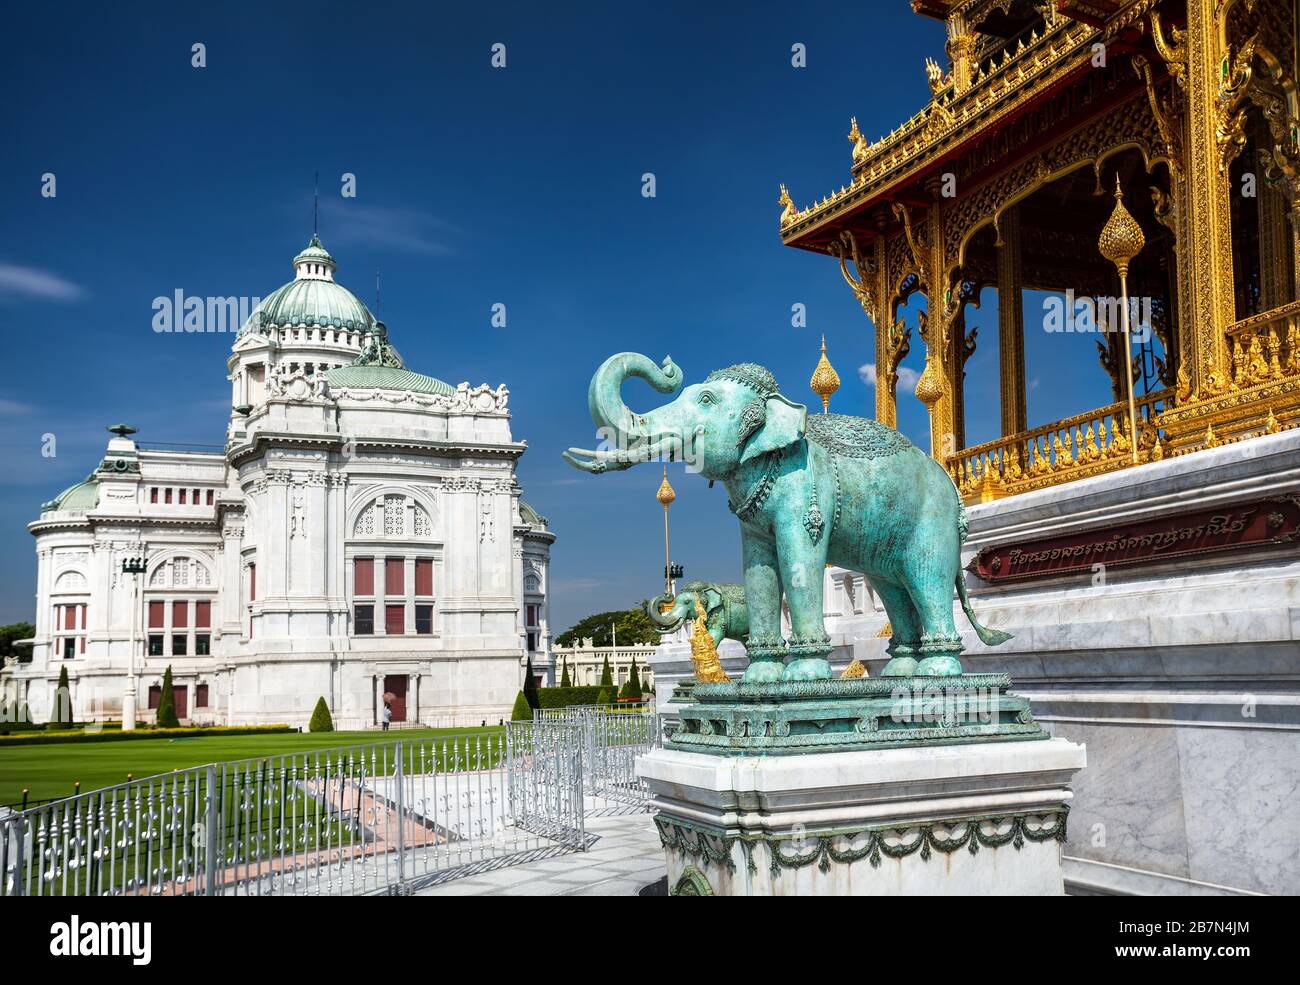 Der Ananta Samakhom Throne Hall in thailändischen Dusit Königspalast und grünen Elefanten-Statue, Bangkok, Thailand. Stockfoto